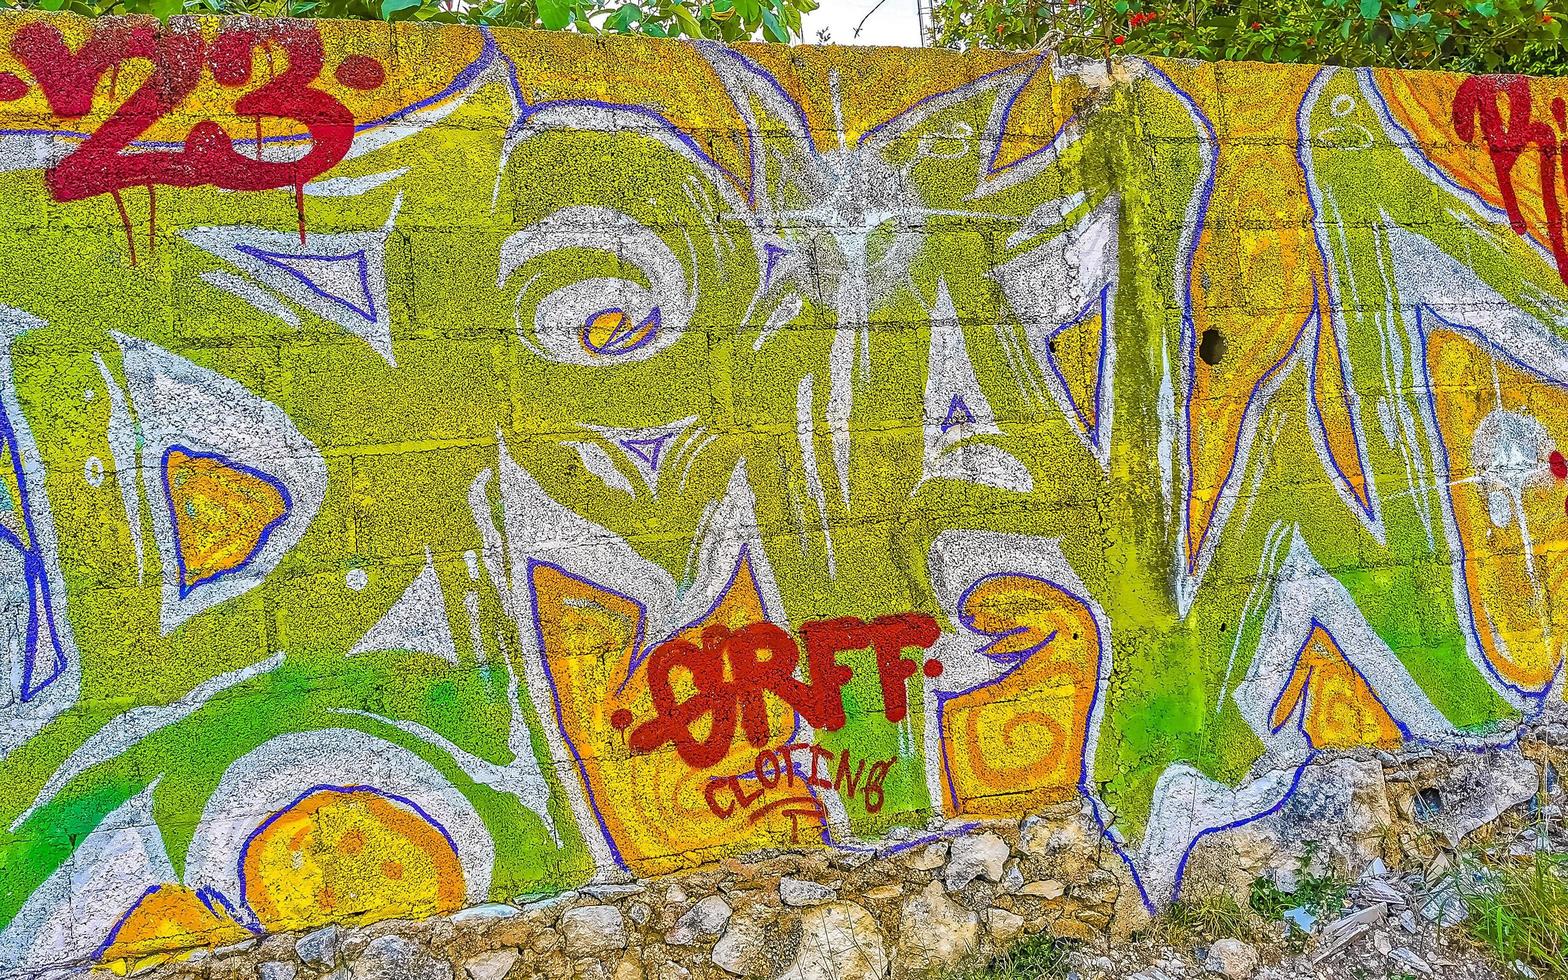 playa del carmen quintana roo mexico 2021 paredes artisticas con pinturas y graffiti playa del carmen mexico. foto